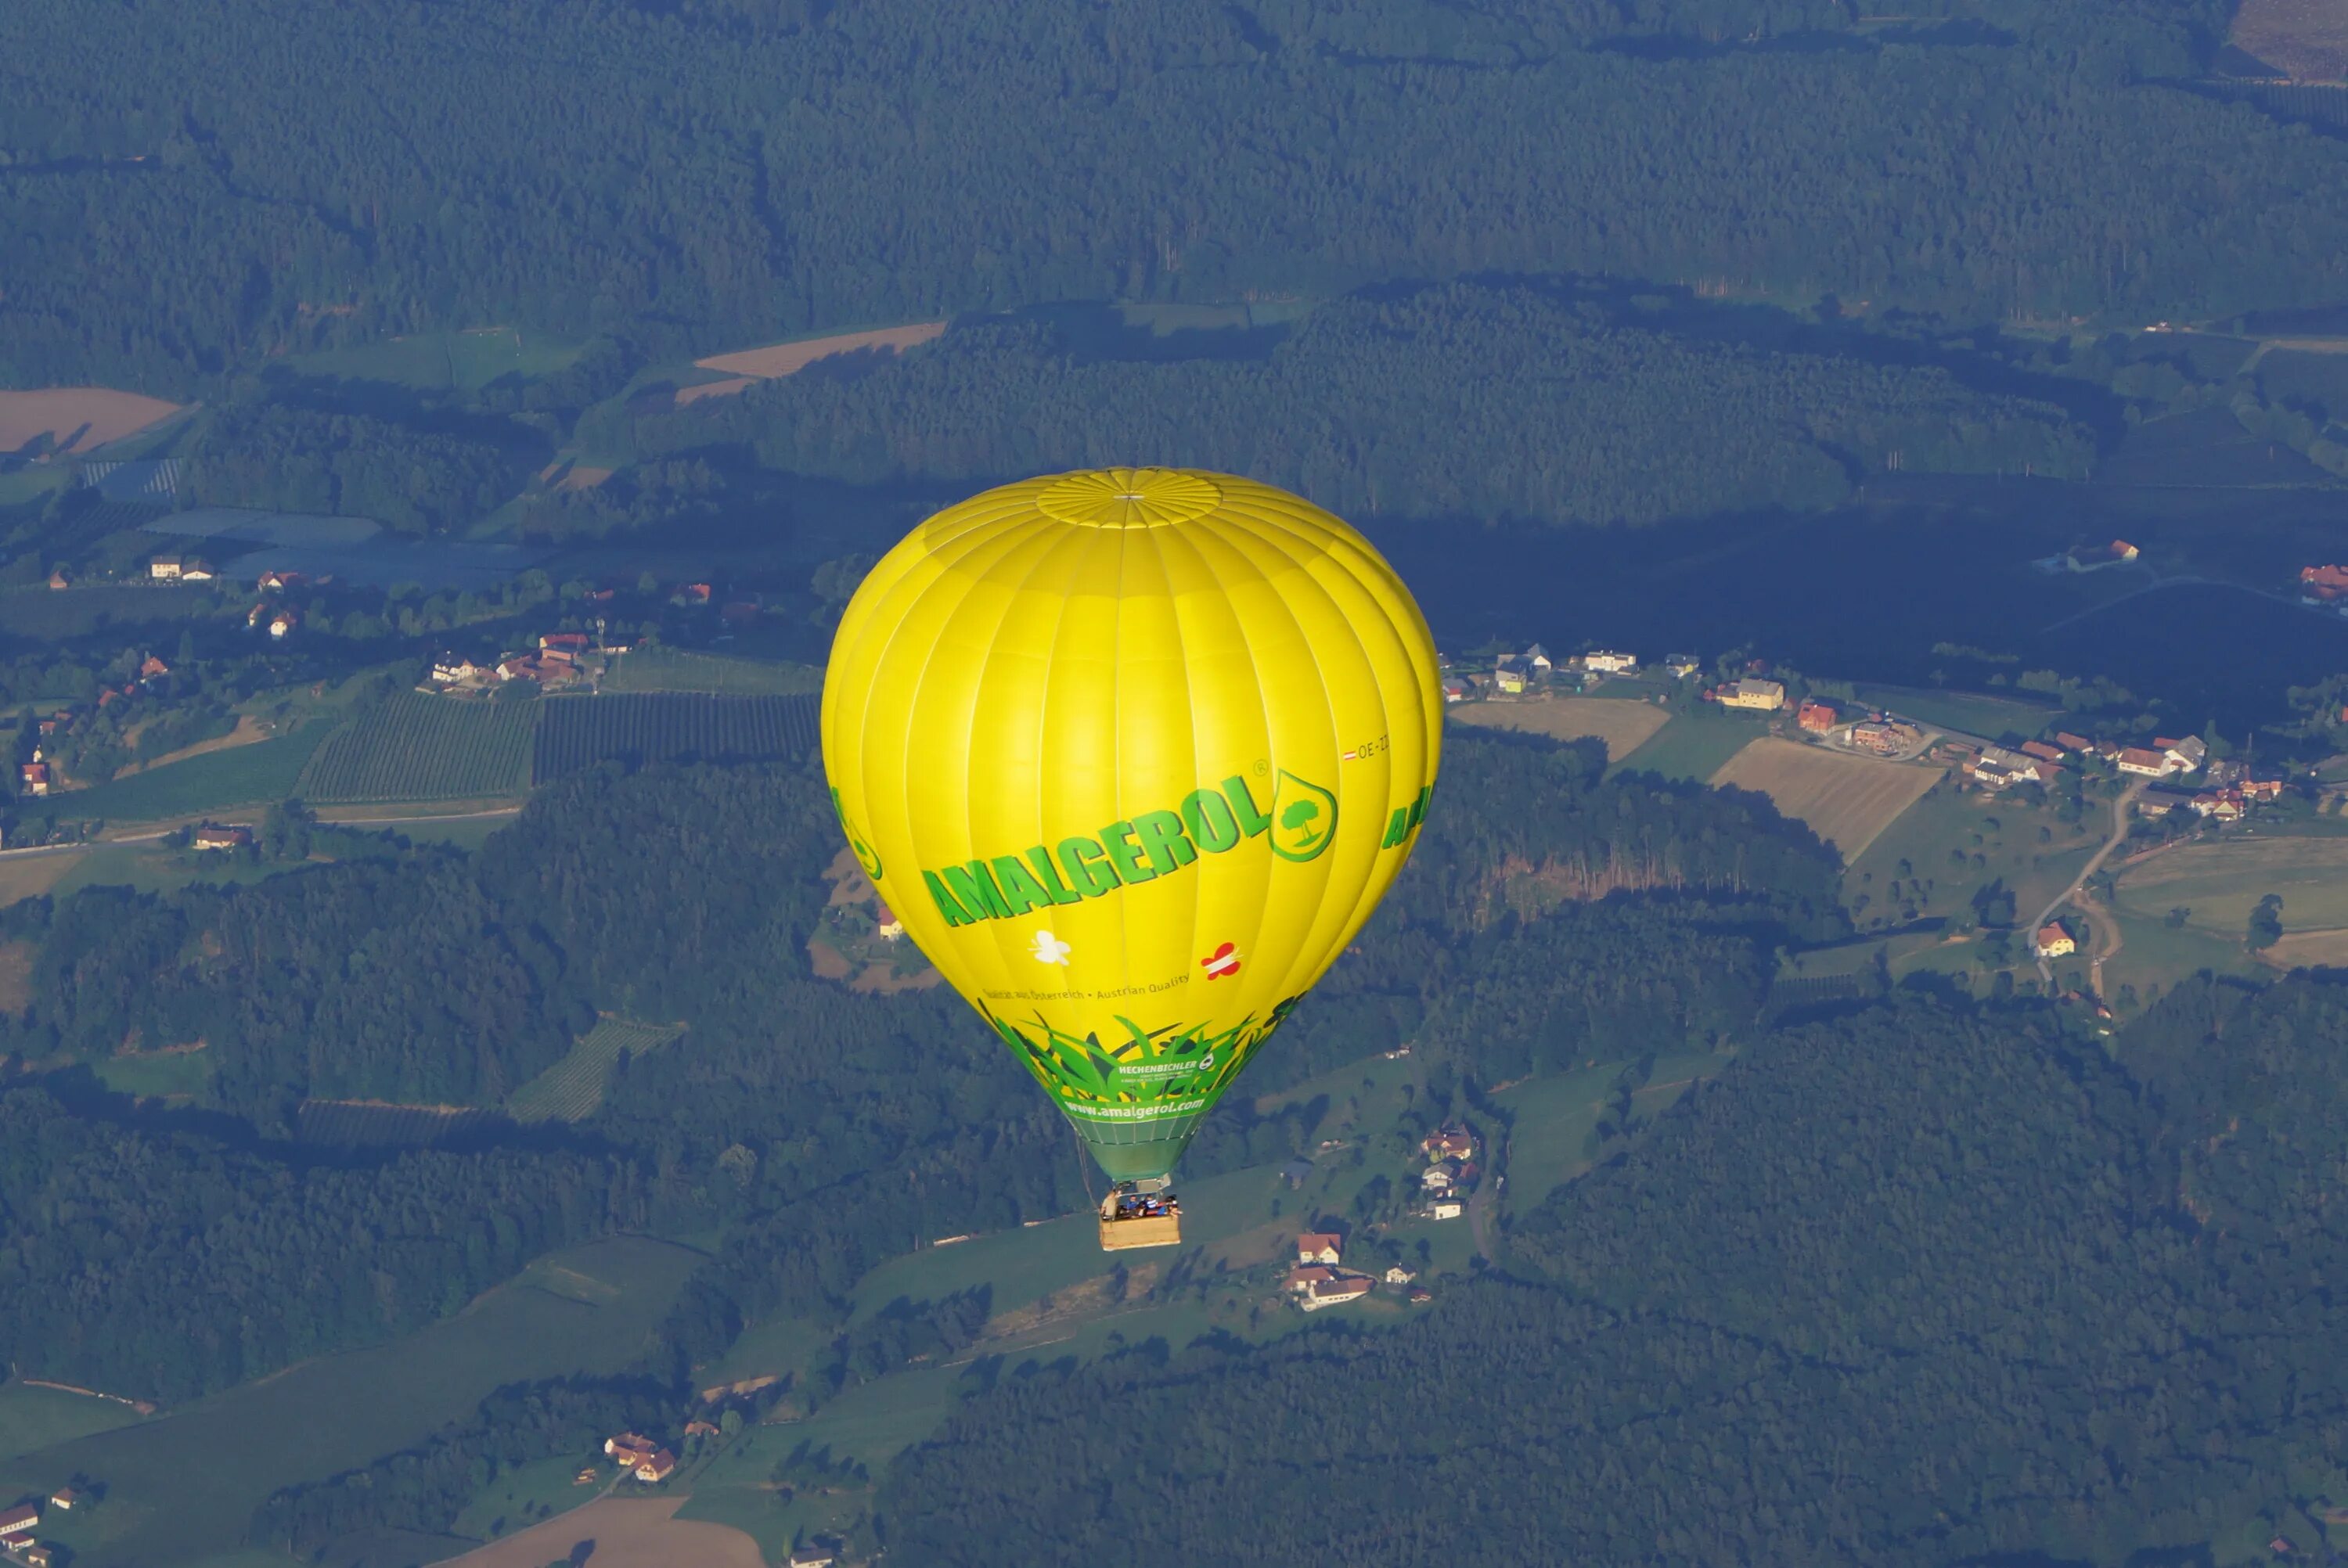 Пилоты воздушных шаров. Воздушный шар неуправляемый аэростат. Вид с воздушного шара. Воздушные шары аэростаты. Воздушный шар вид сверху.